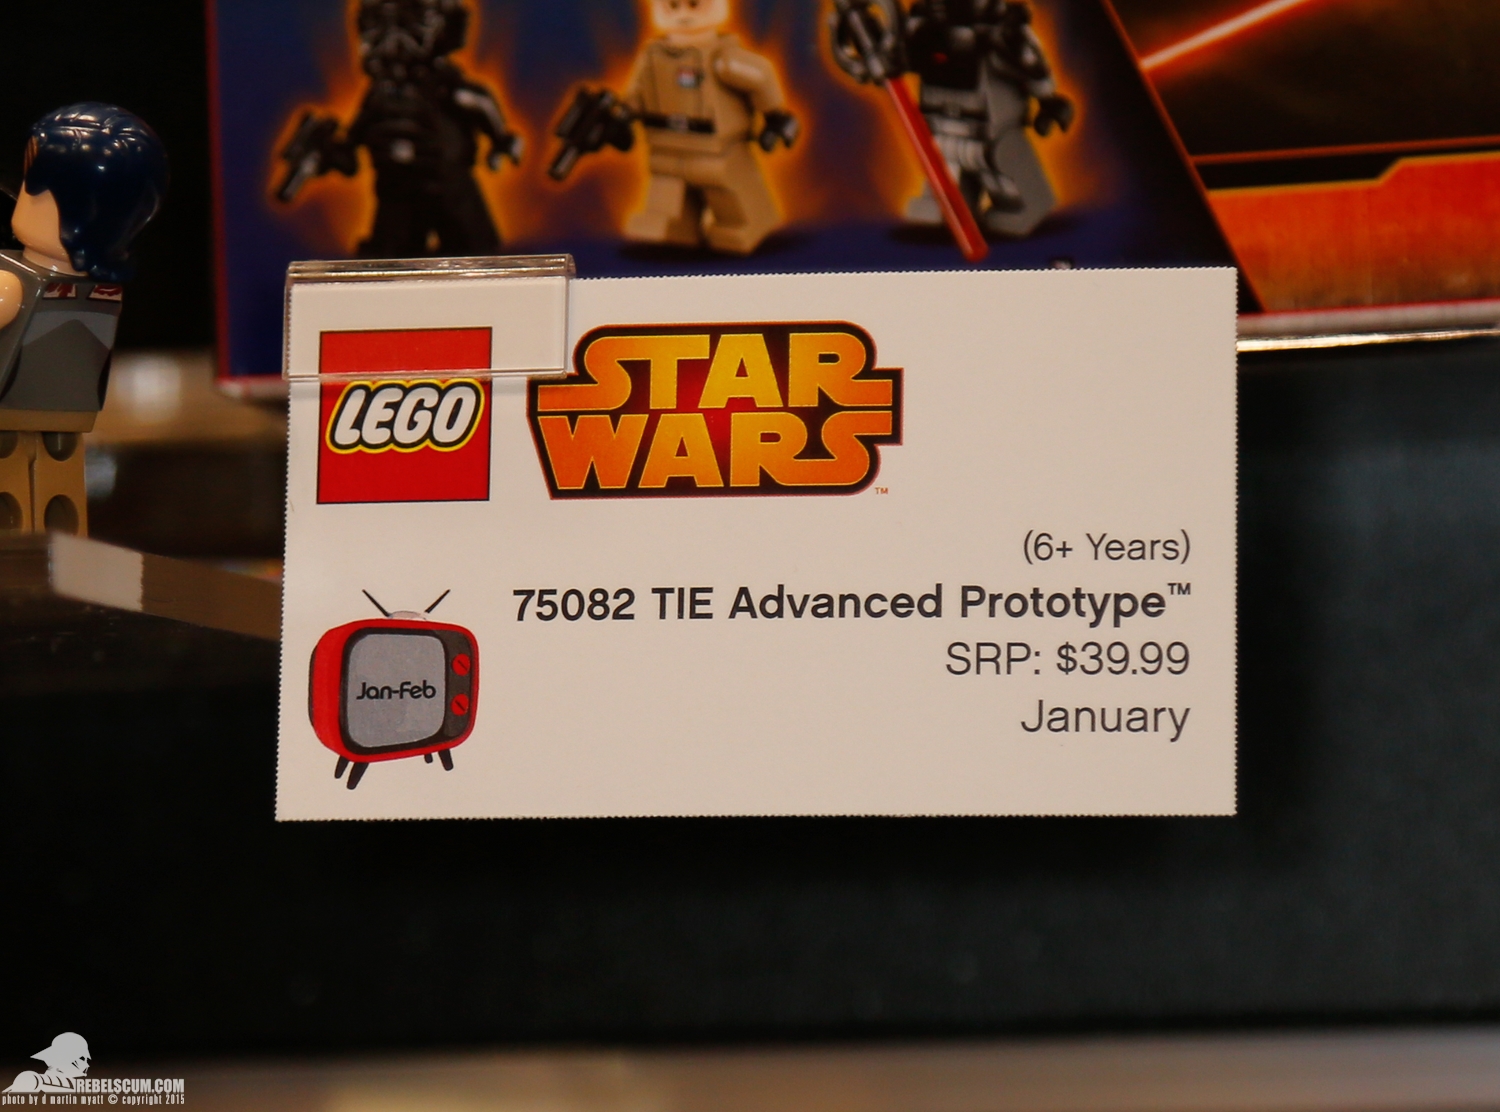 2015-International-Toy-Fair-Star-Wars-Lego-058.jpg